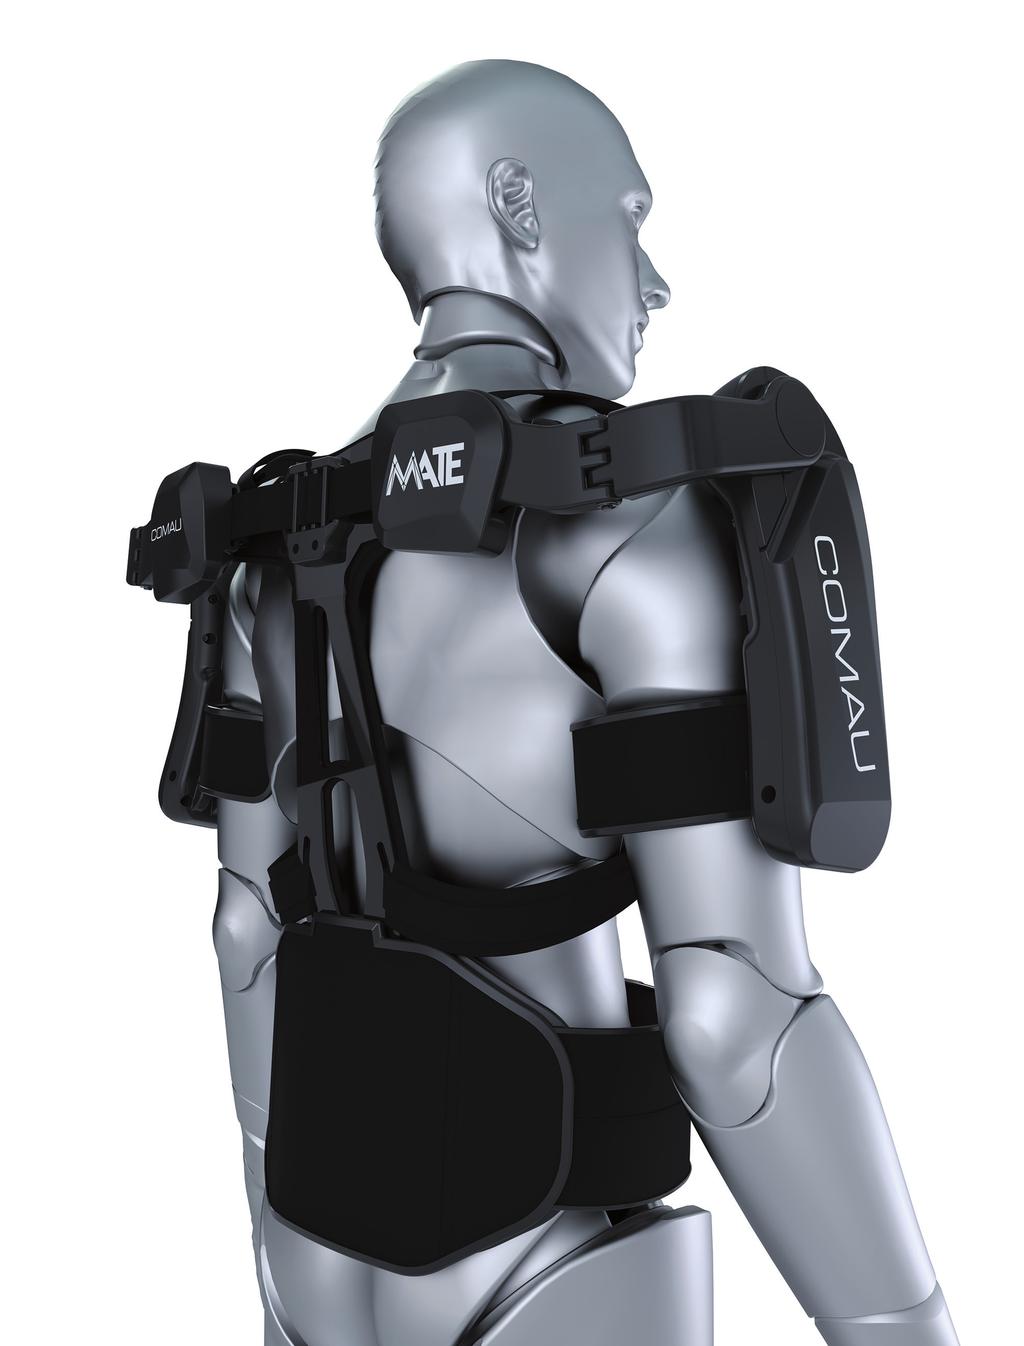 Exoesqueleto Comau - M.A.T.E. Sistema de regulagem para os ombros Limitação mecânica para abertura do ombro Circulação